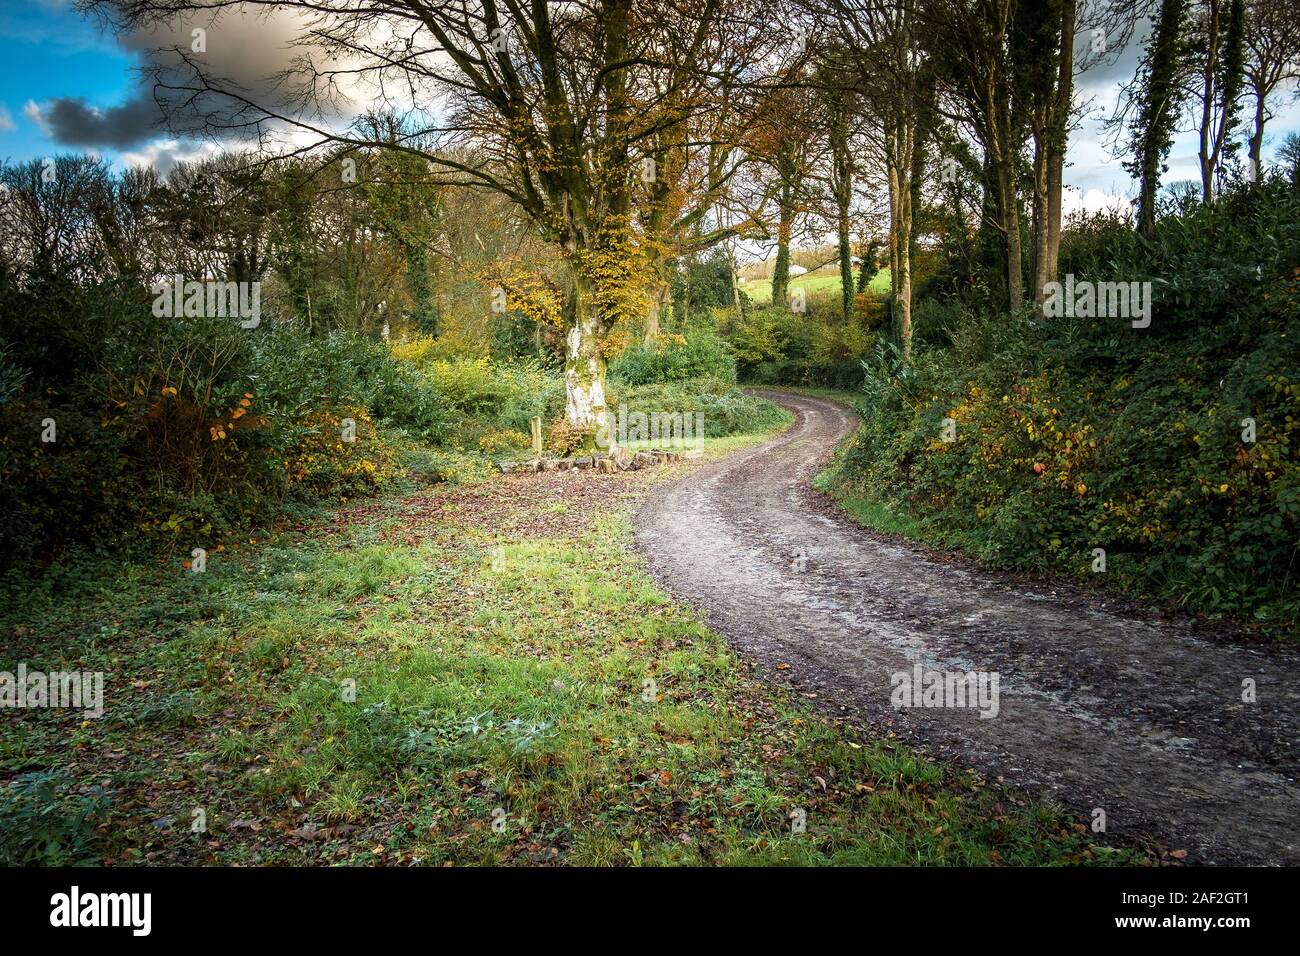 Un serpeggiante percorso fangoso in Colan boschi, i motivi ricoperta della storica Abete Hill Manor in Parrocchia Colan in Newquay in Cornovaglia. Foto Stock